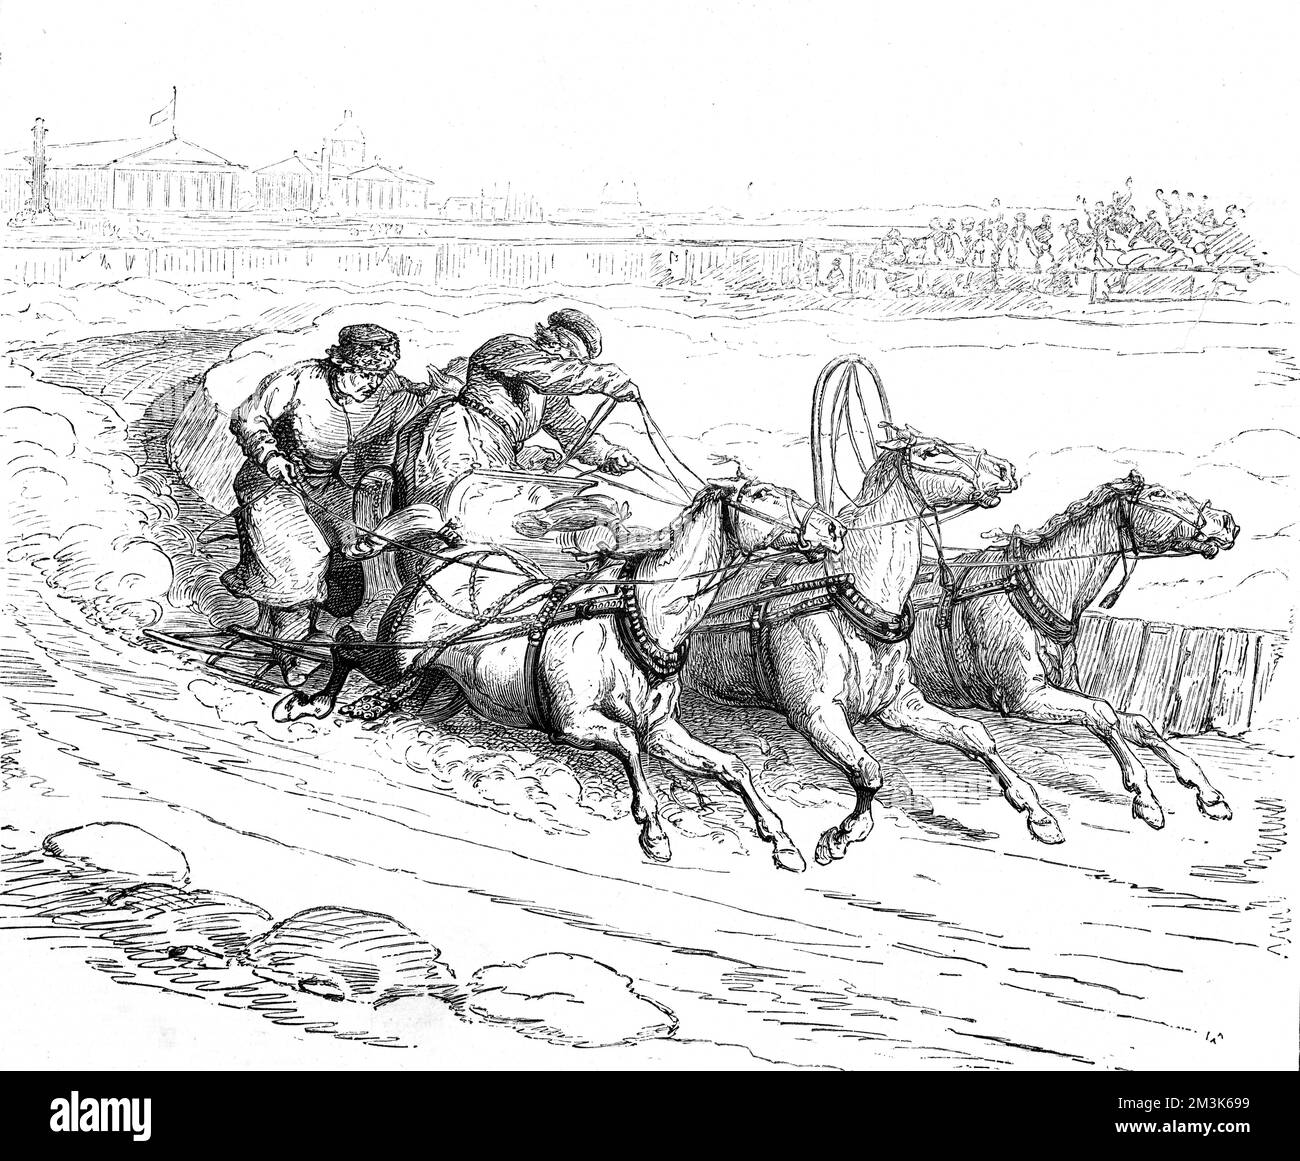 Pferdeschlittenrennen in St. Petersburgh, Russland. Zwei Männer, die mit dem Schlitten um eine enge Ecke fuhren. Datum: 1877 Stockfoto